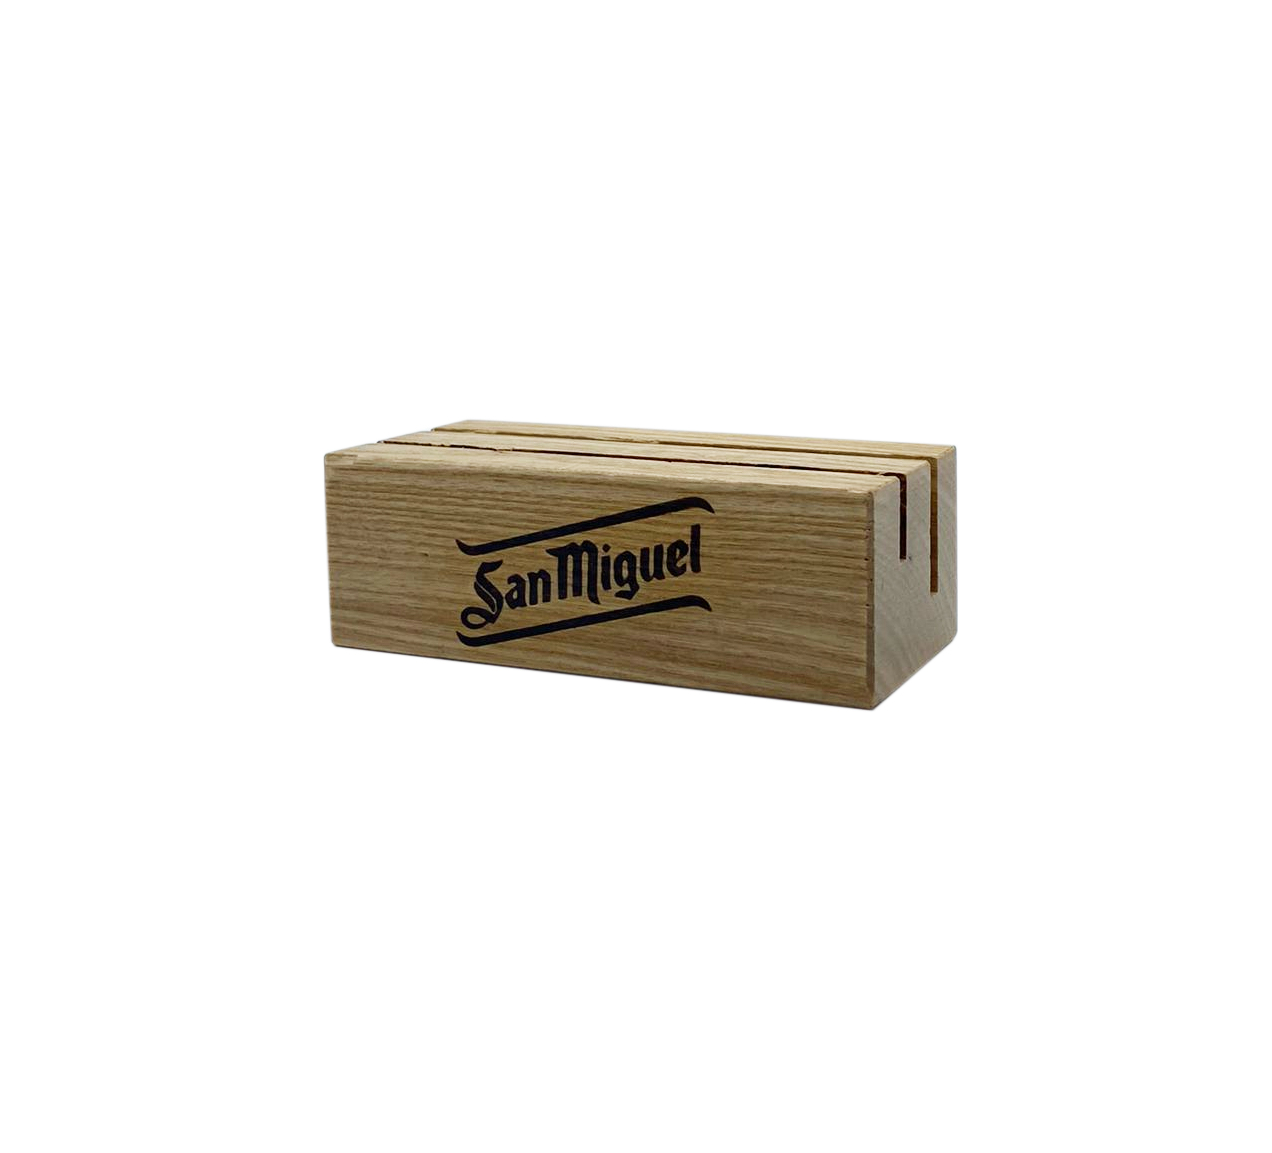 San Miguel 5er-Set 5x Tischaufsteller Kartenhalter Gastro aus Holz Maße: ca. 10cm lang, 5cm breit, 3,5cm hoch 